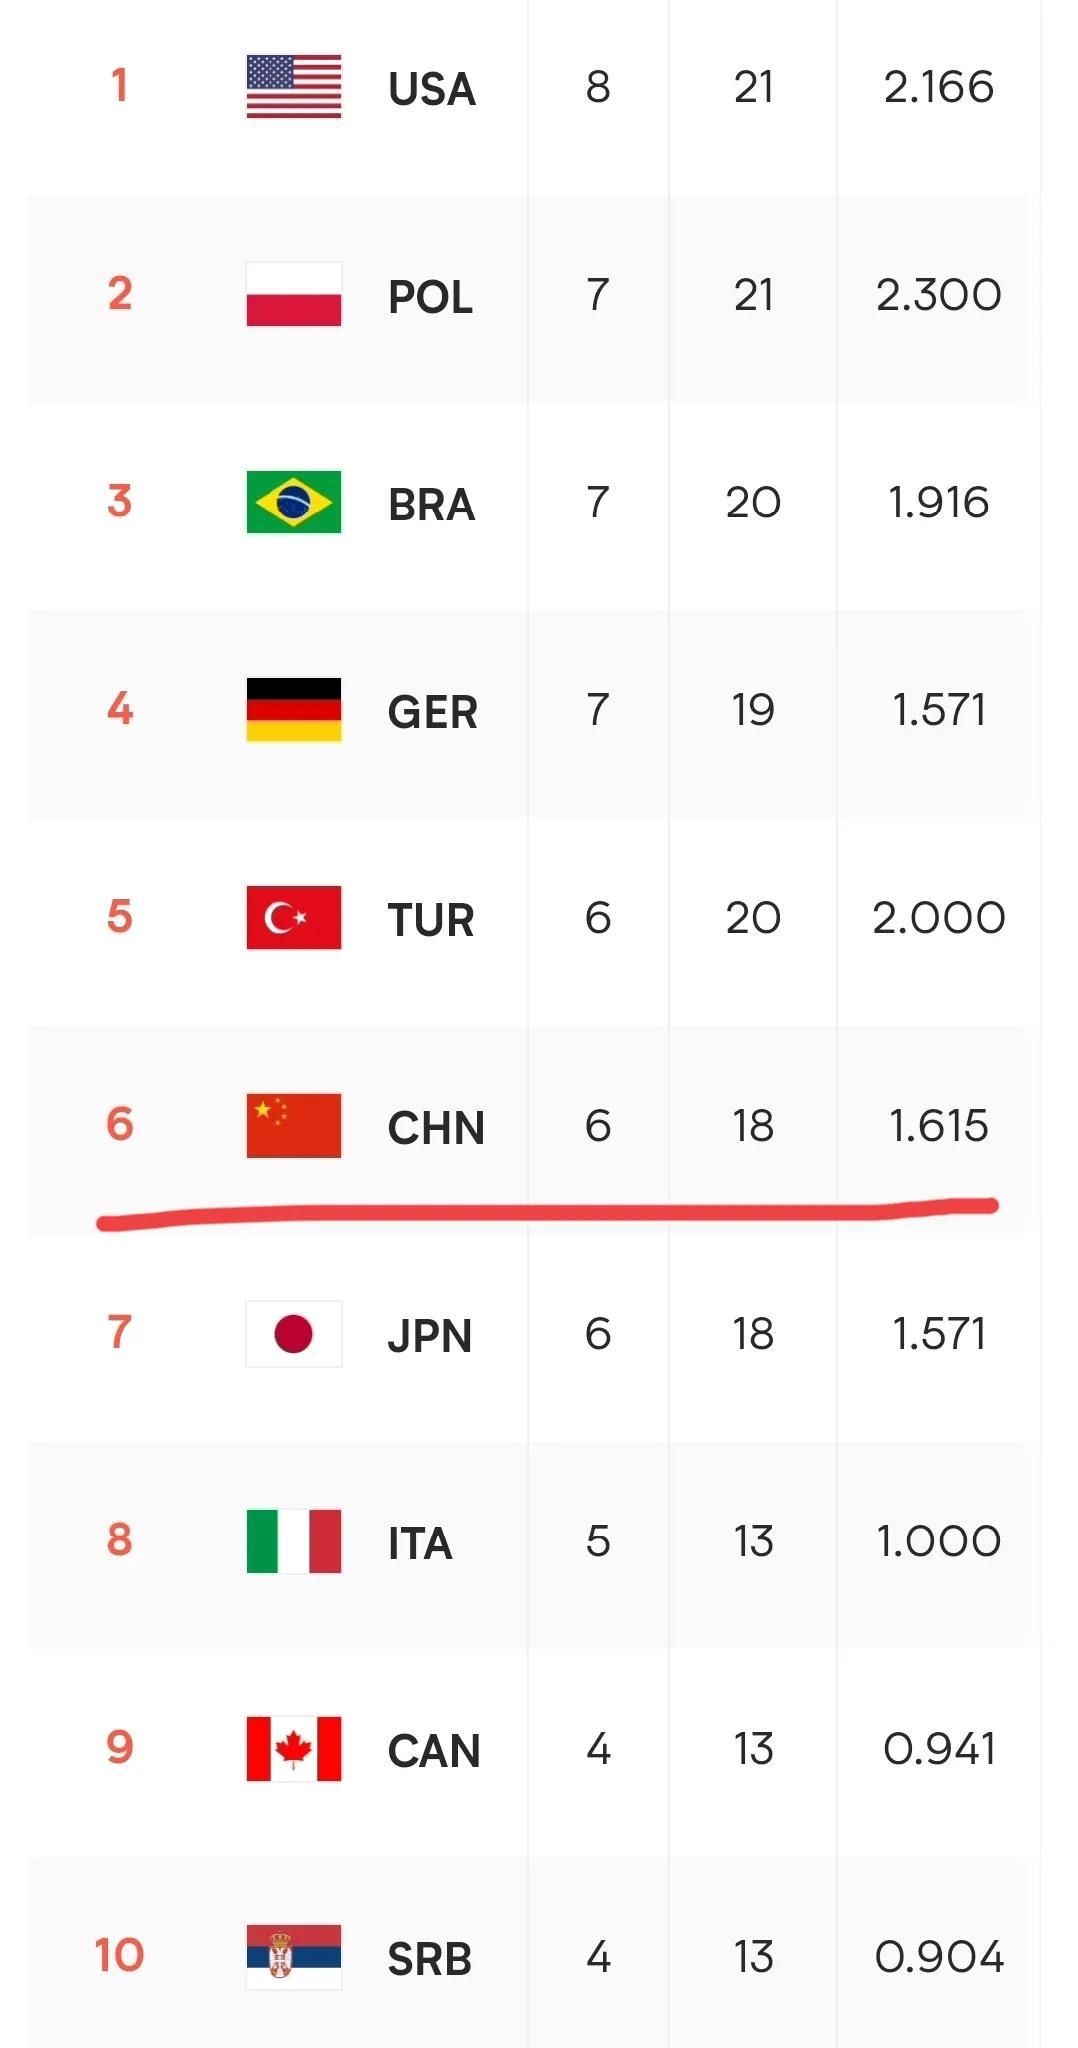  第九轮比赛结束，中国女排下滑到第六。
第一，美国
第二，波兰
第三，巴西
第四(1)